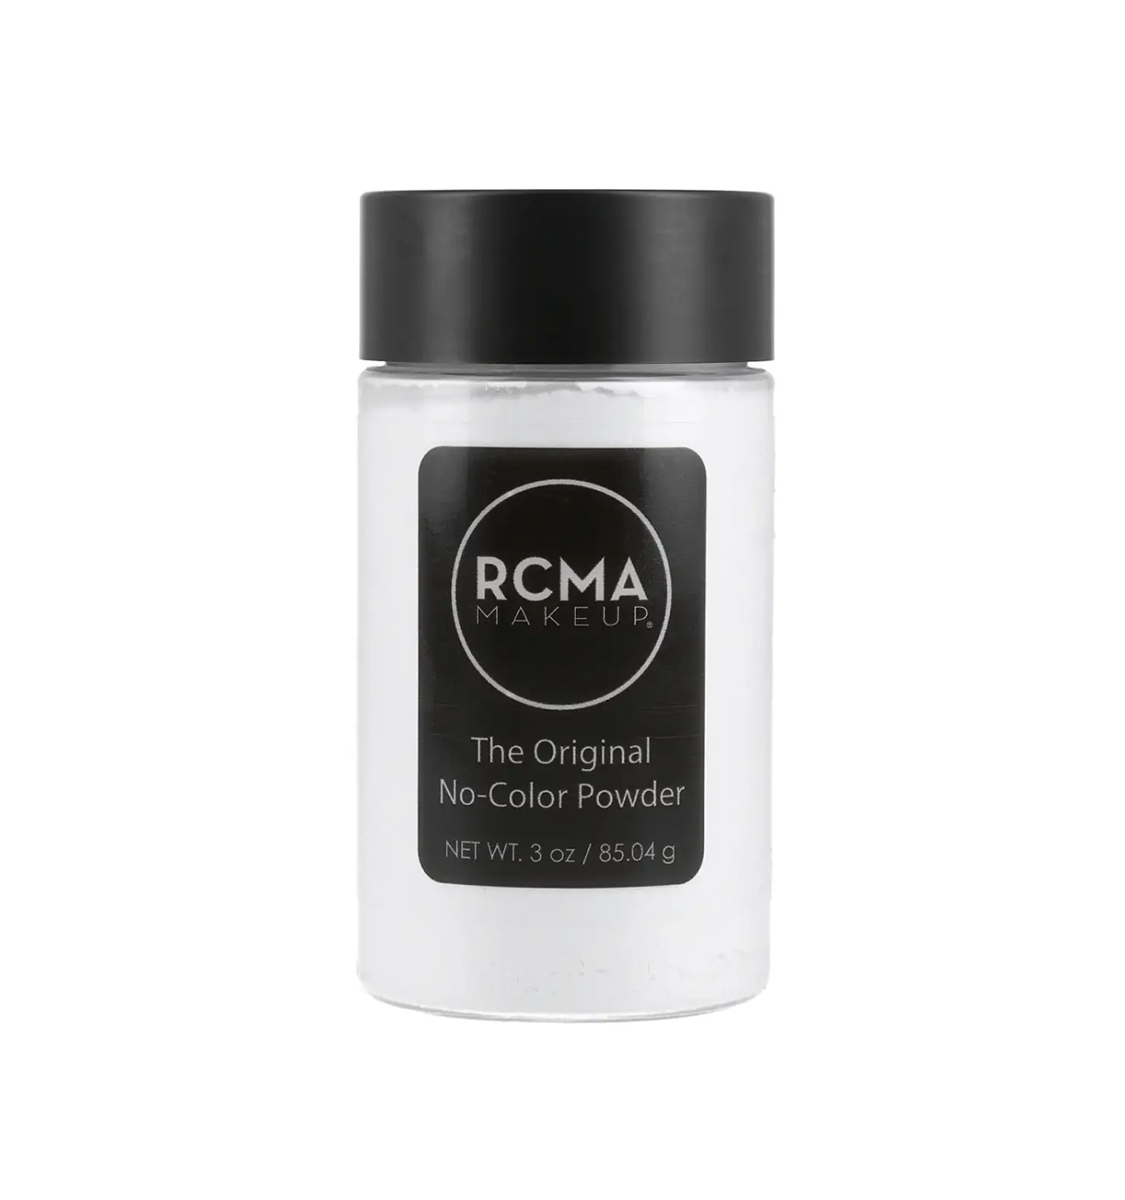 RCMA The Original No-Color Powder